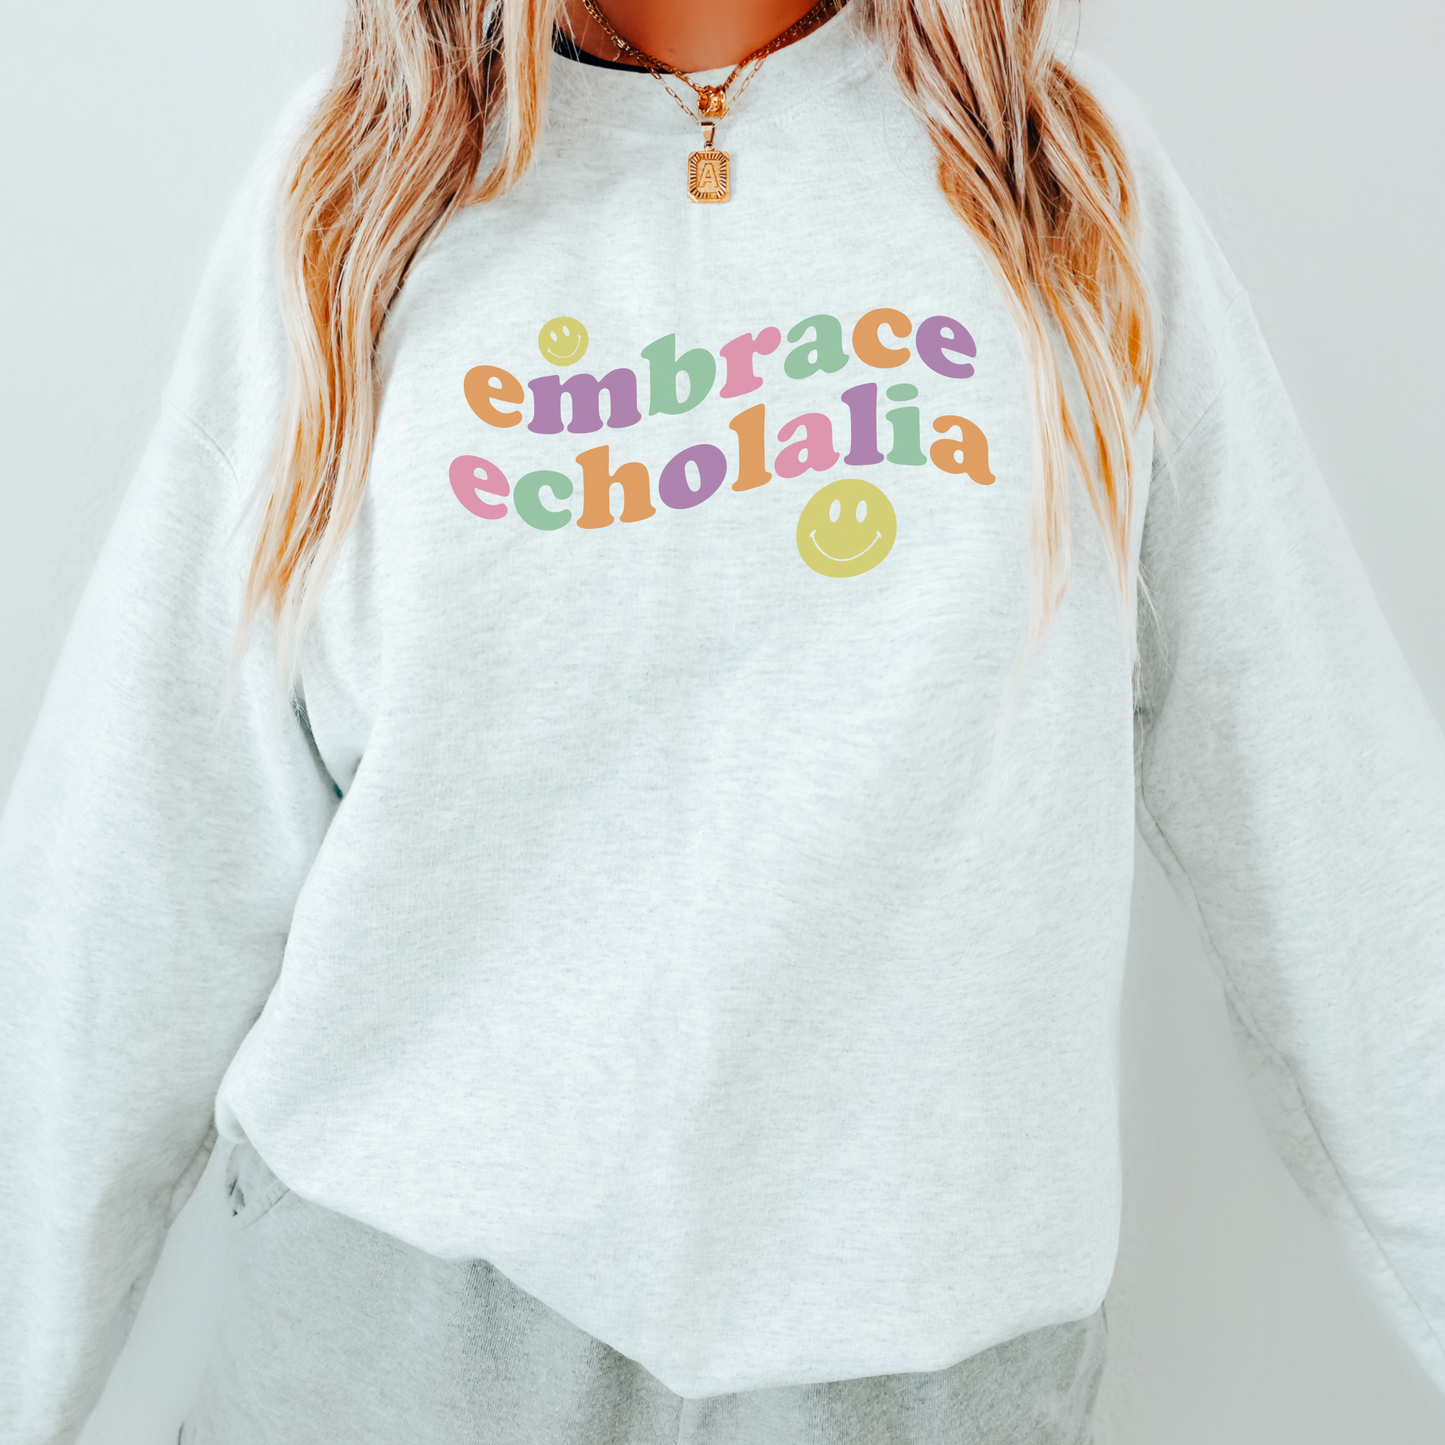 Embrace Echolalia Wavy Crewneck Sweatshirt